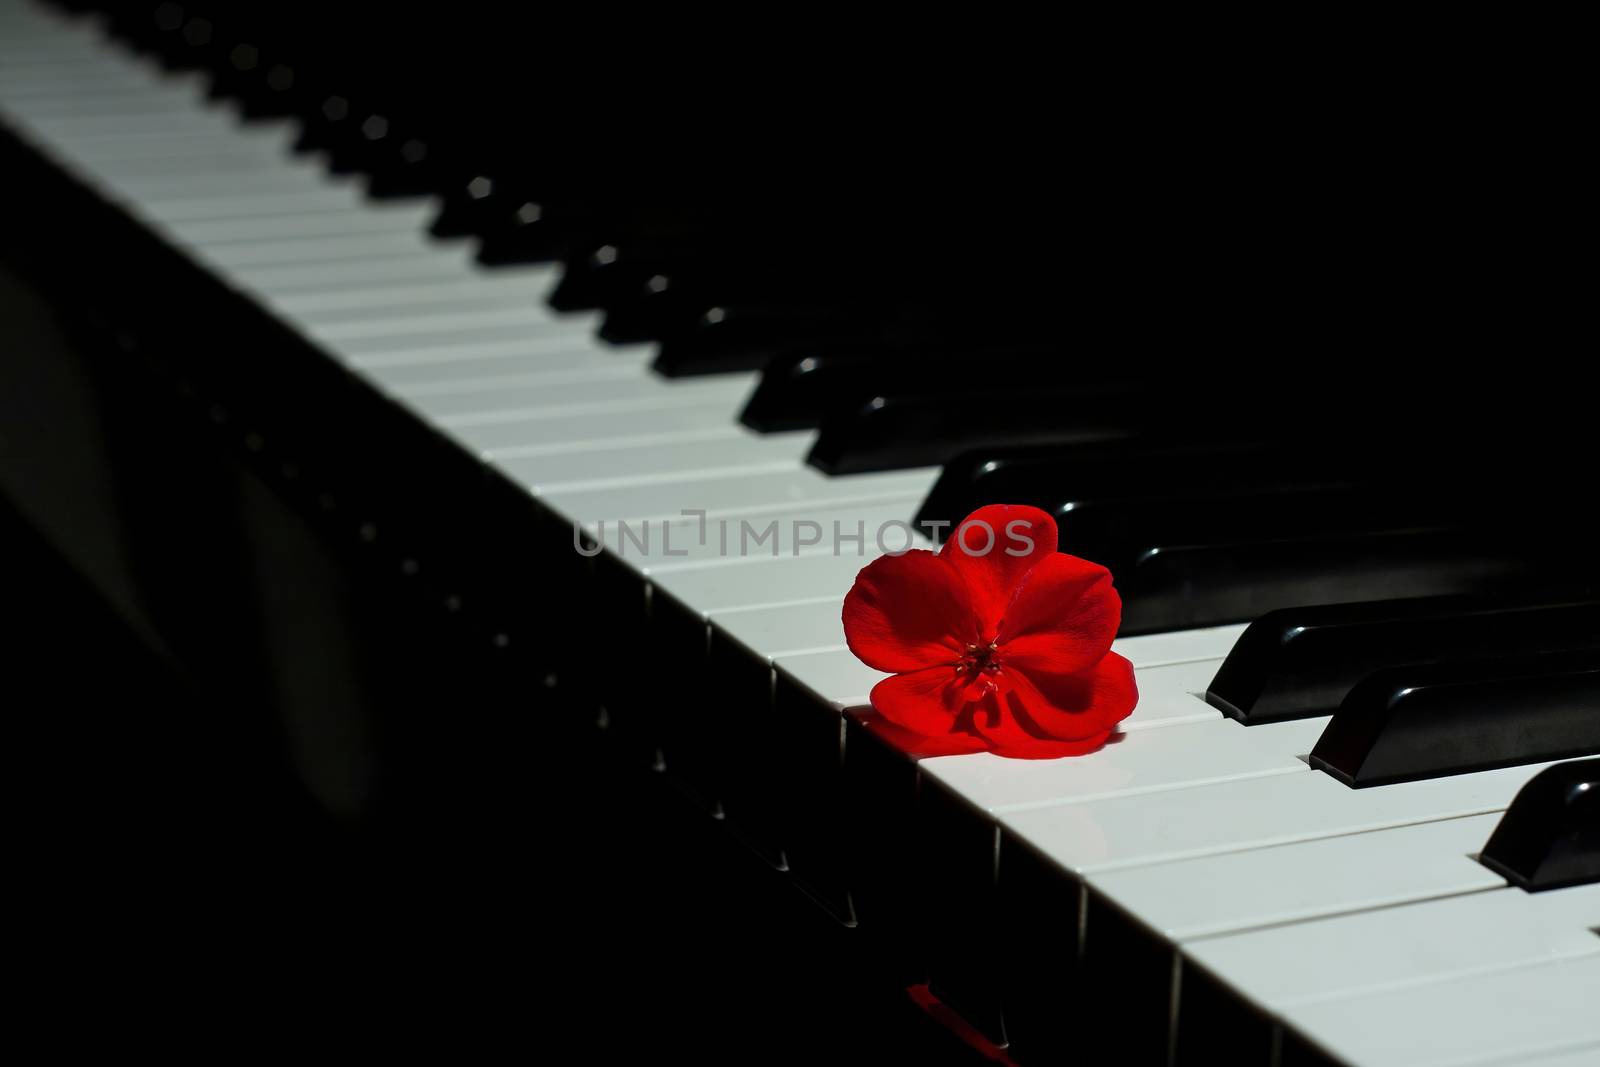 Piano with a red geranium flower by Digoarpi